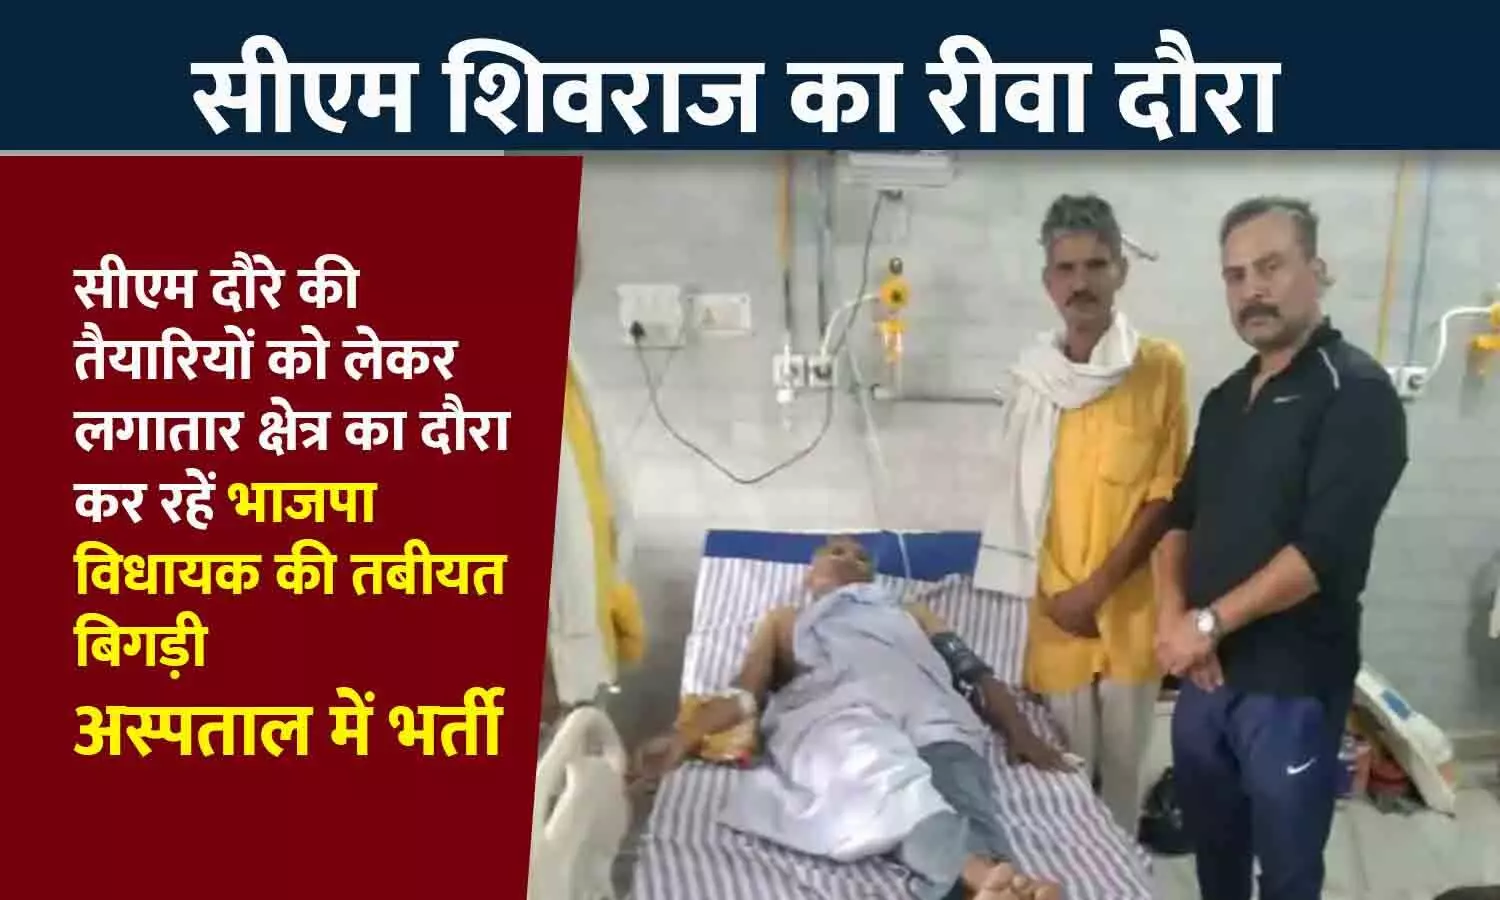 सीएम शिवराज के रीवा दौरे से पहले भाजपा विधायक की तबियत बिगड़ी, इलाज के लिए संजय गांधी अस्पताल में भर्ती हुए